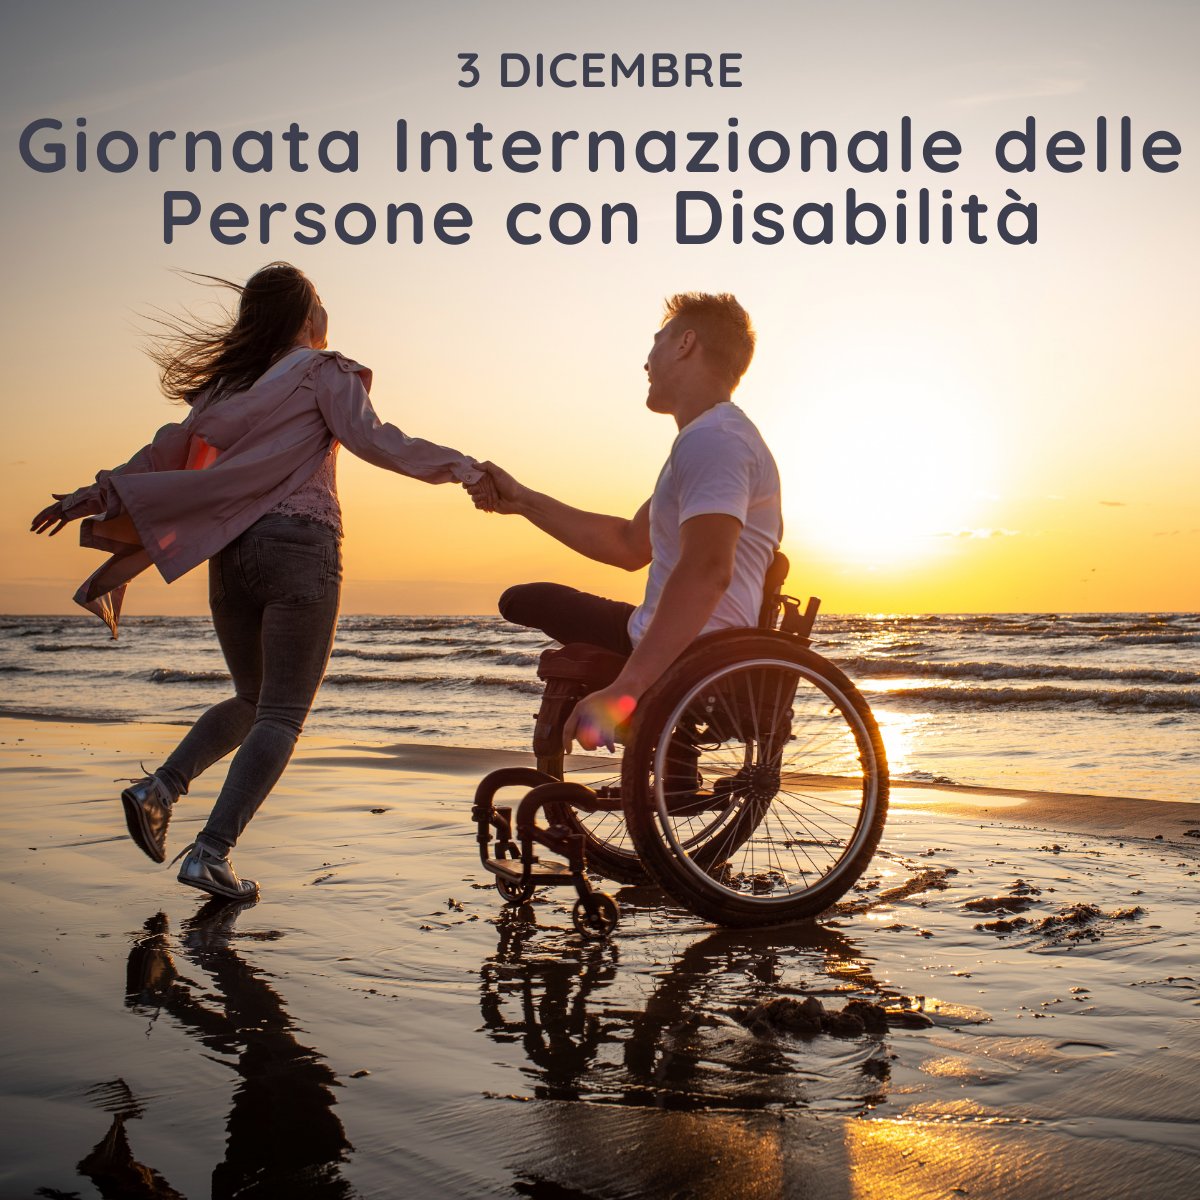 #giornatamondialedelladisabilita 
#3dicembre 
I 'veri' disabili? Siamo noi che non sappiamo accettare le diversità...